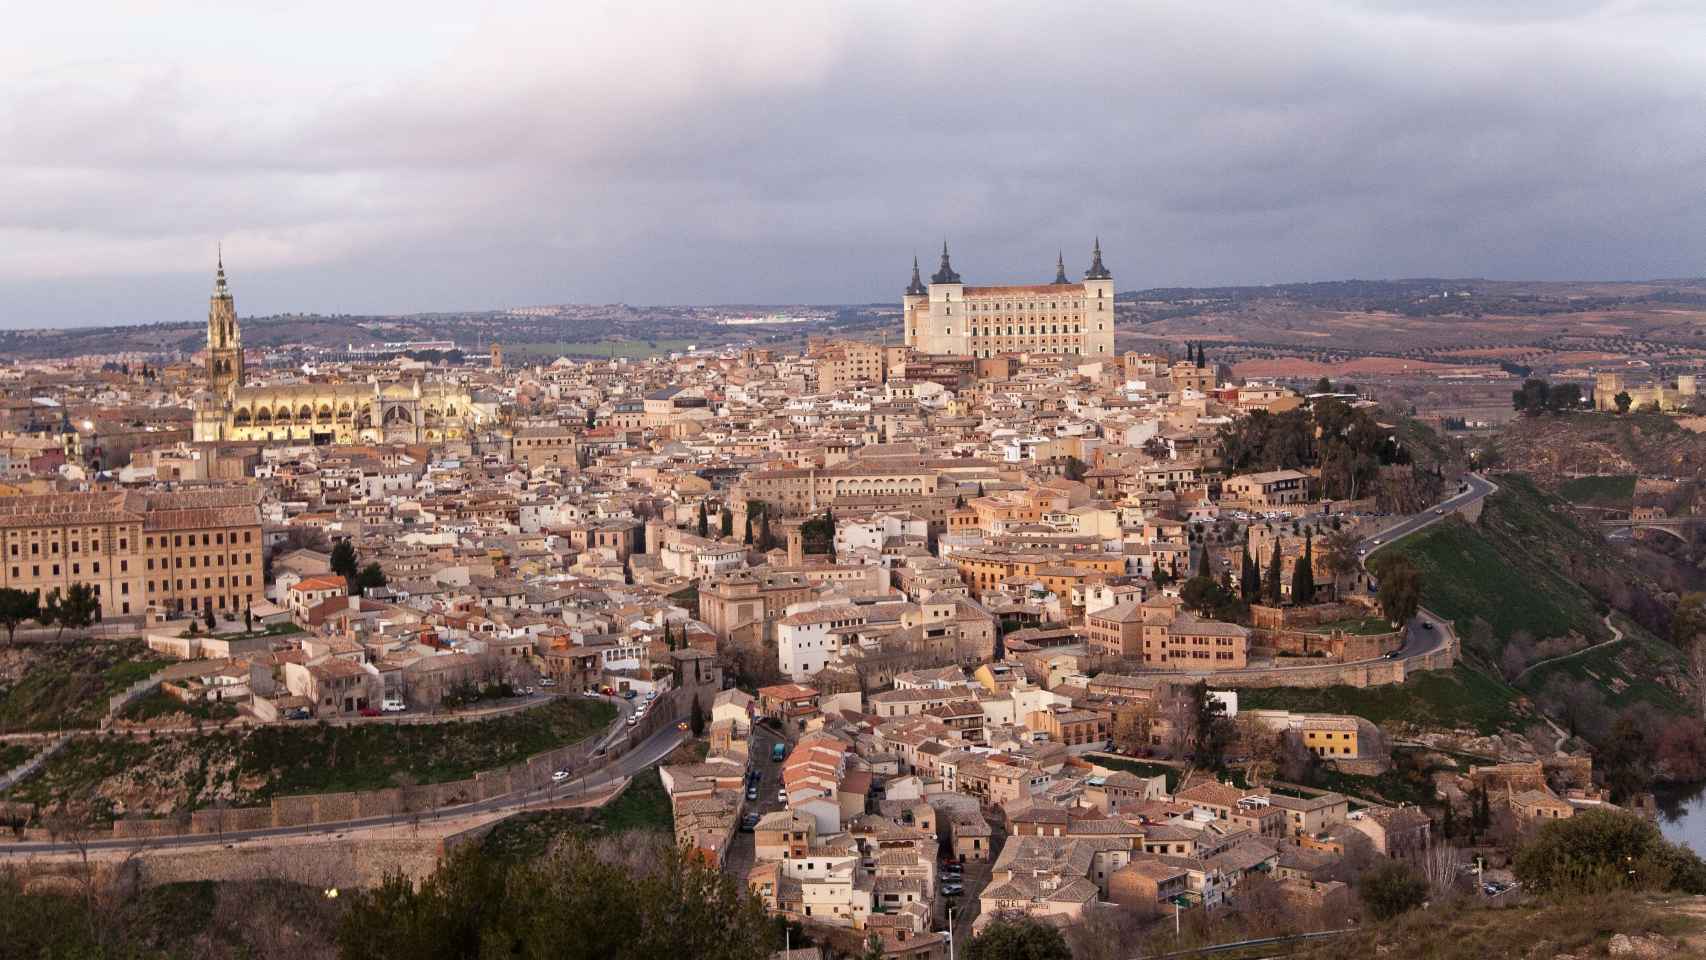 La ciudad de Toledo vista desde el Parador.